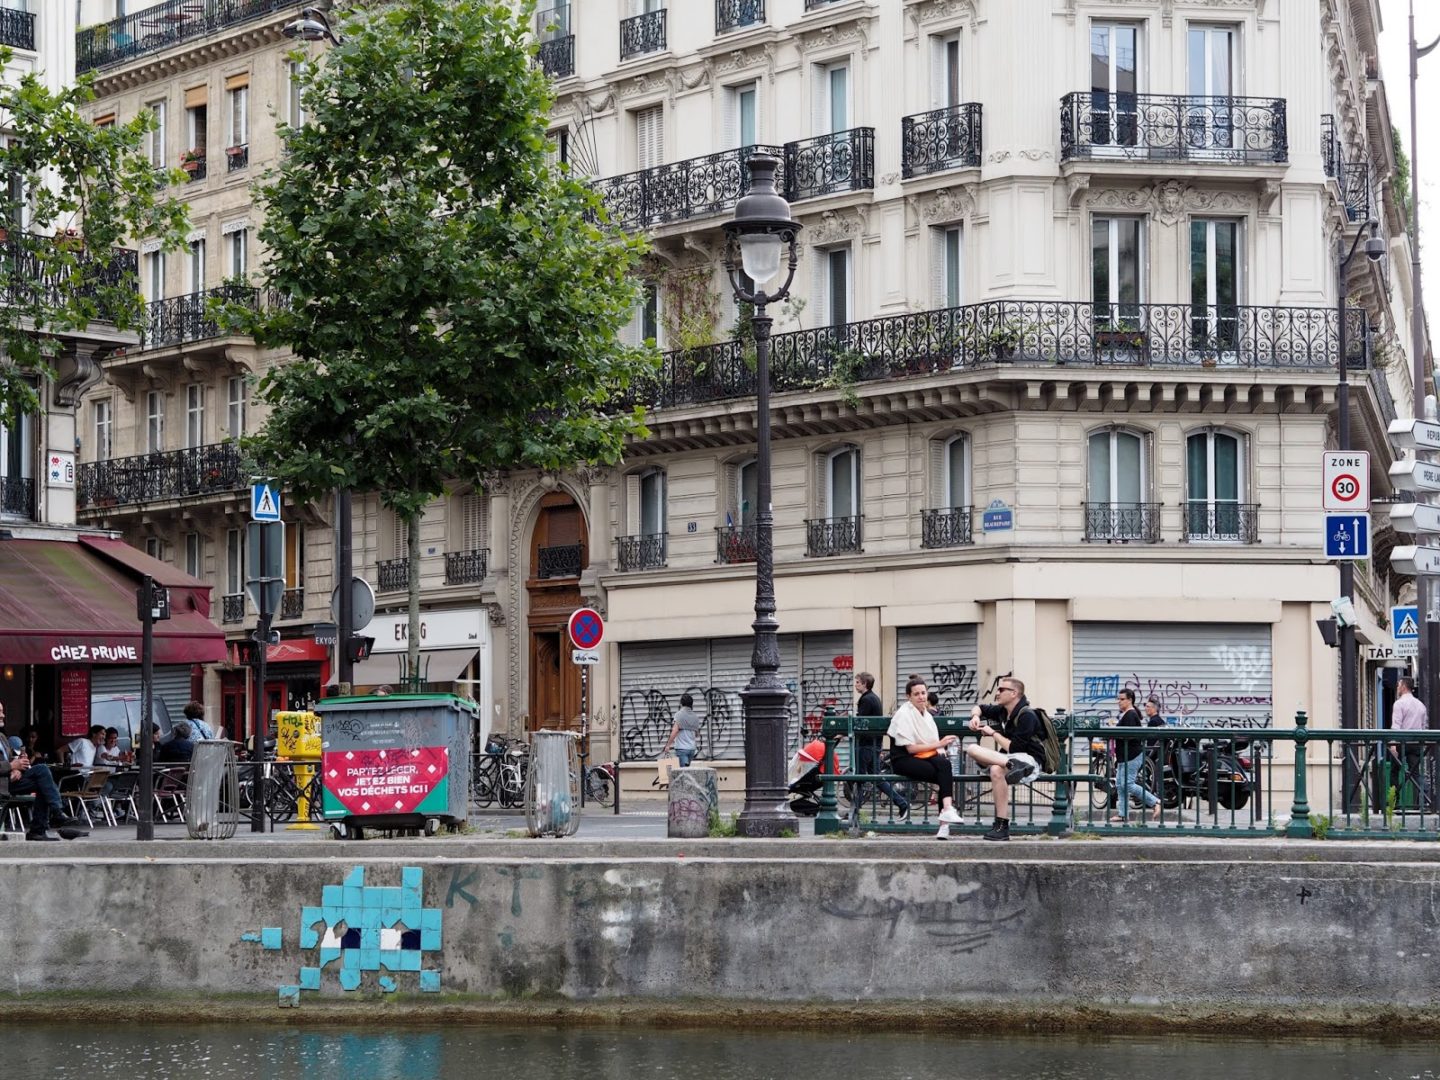 paříž tipy průvodce co vidět kavárny muzea restaurace v paříži